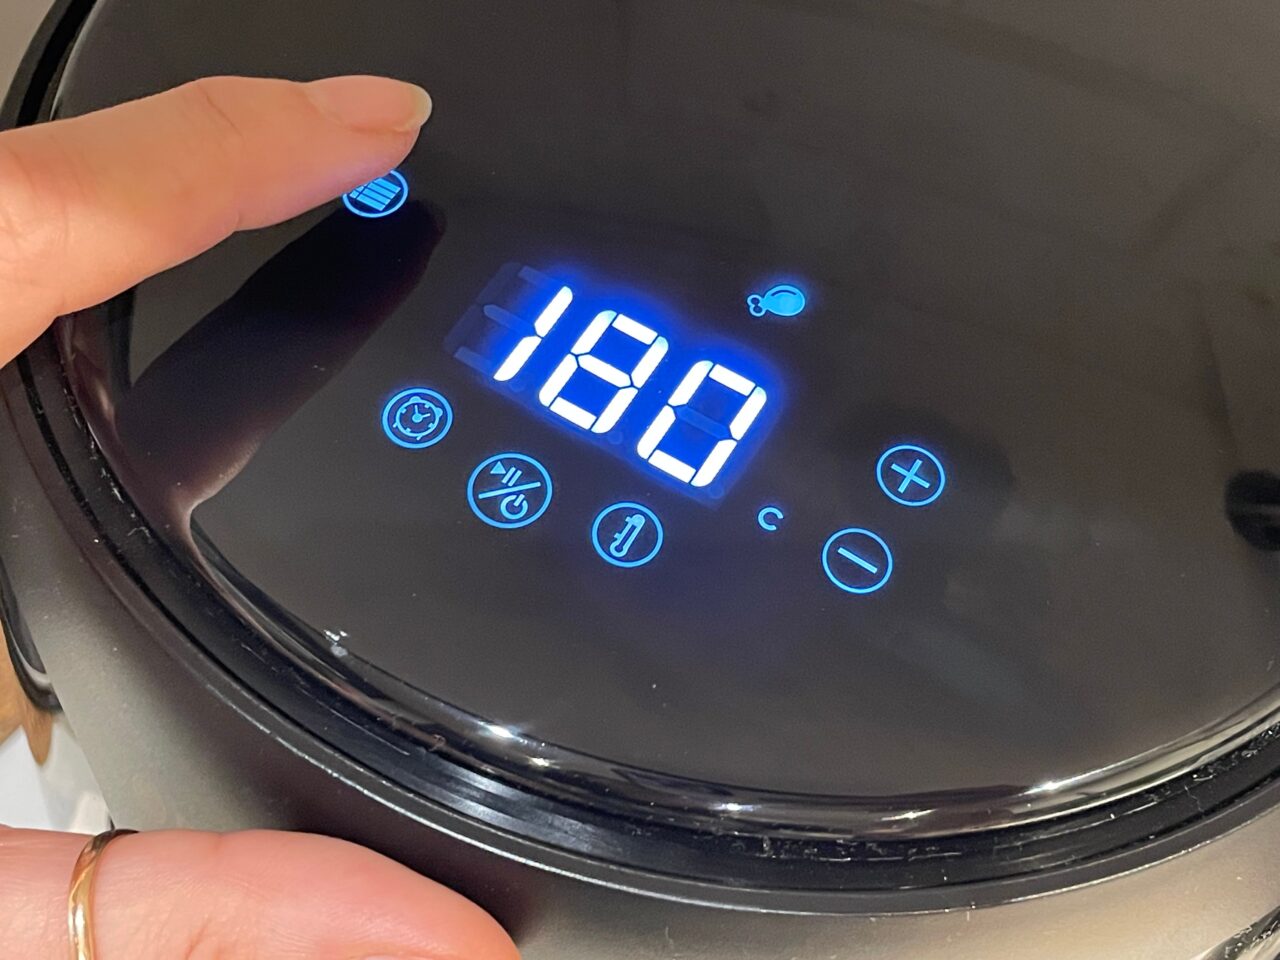 Panel sterowania czarnego urządzenia kuchennego z niebieskim podświetleniem pokazujący temperaturę 190 stopni Celsjusza, z dłonią dotykającą ekranu.